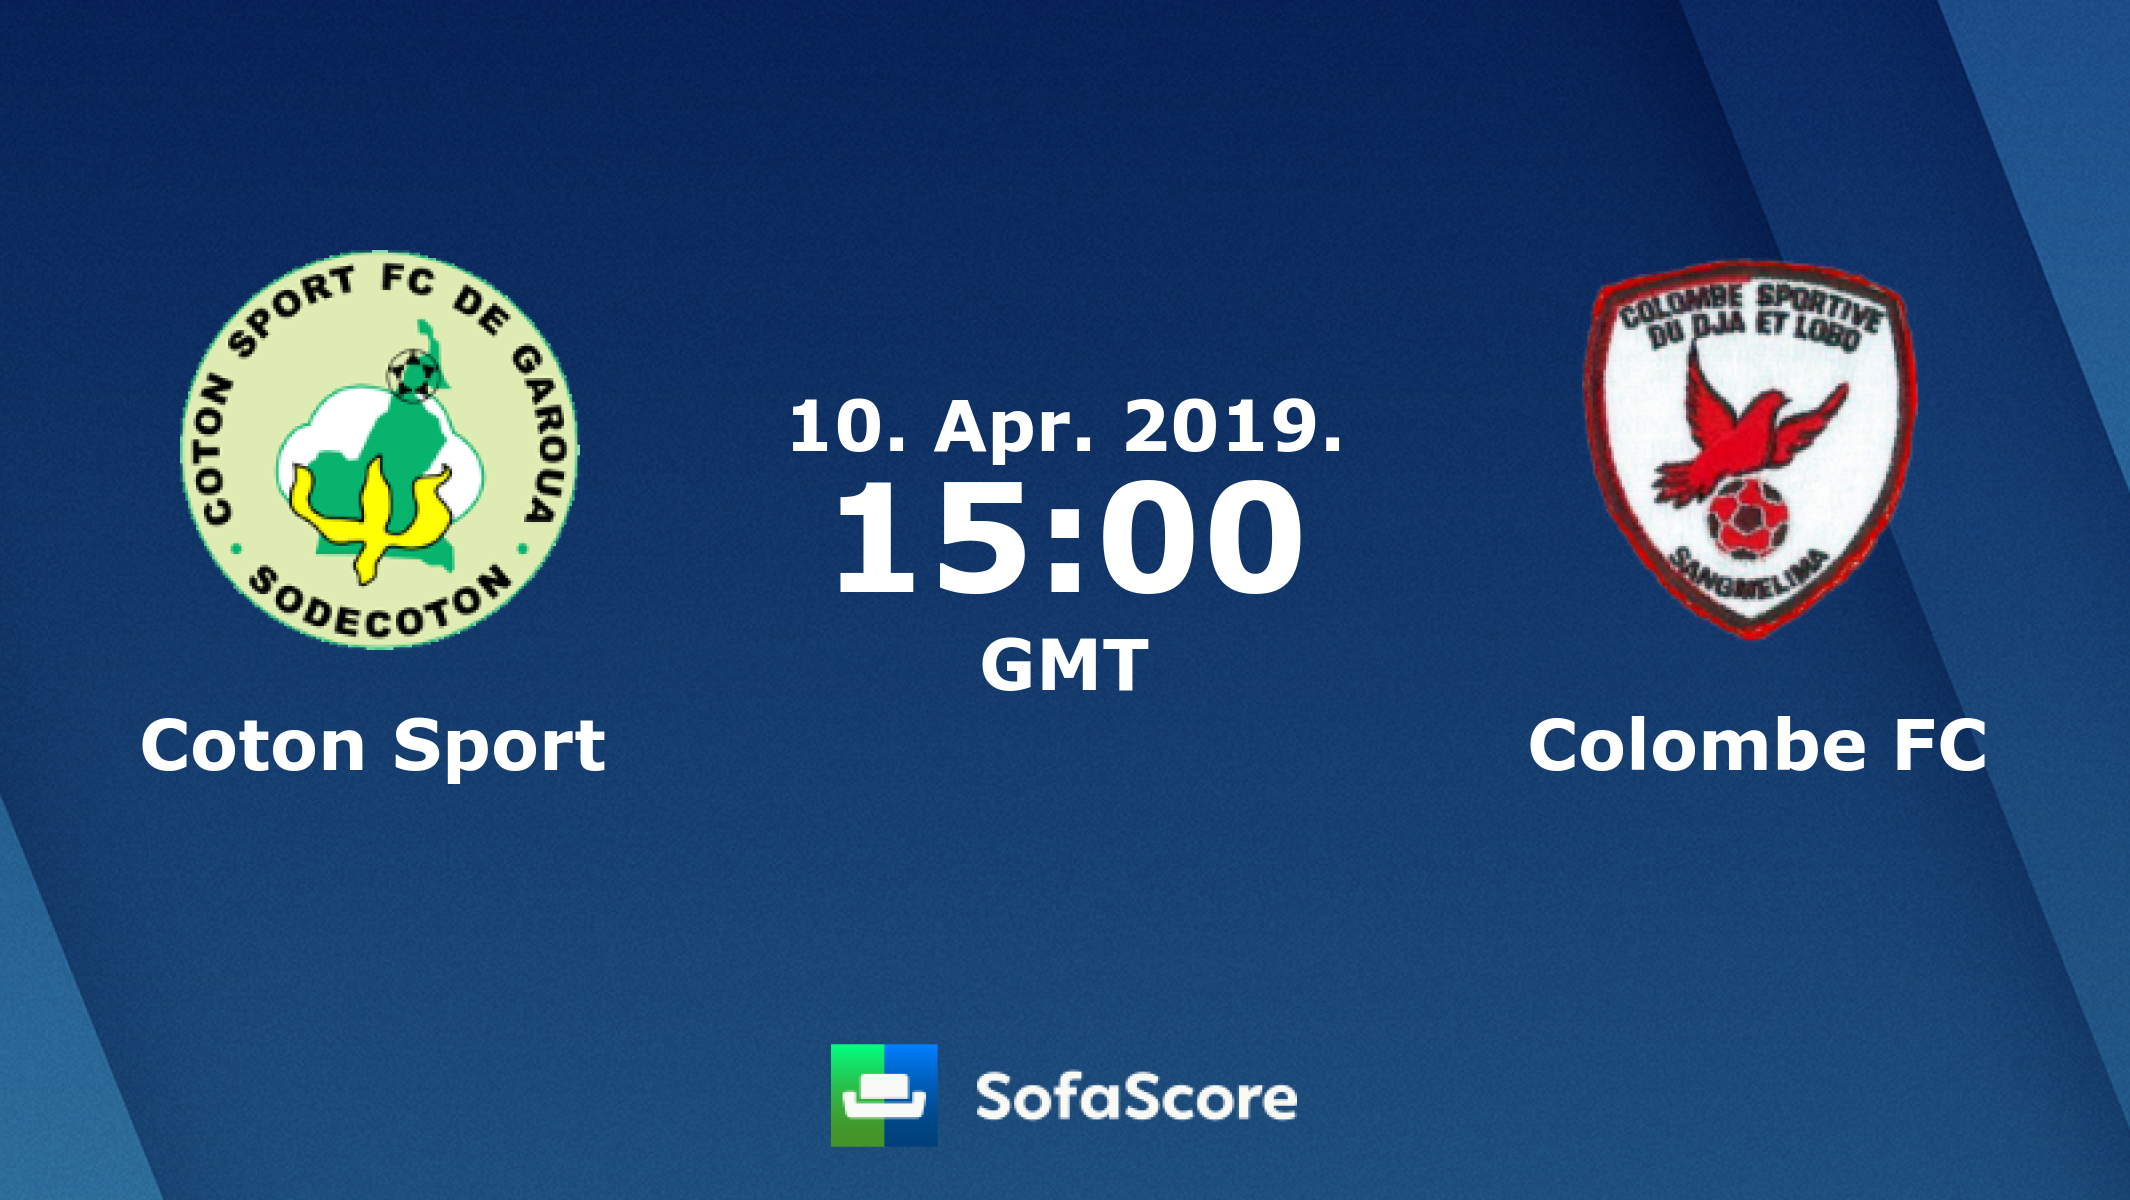 Coton Sport FC de Garoua - Officiel